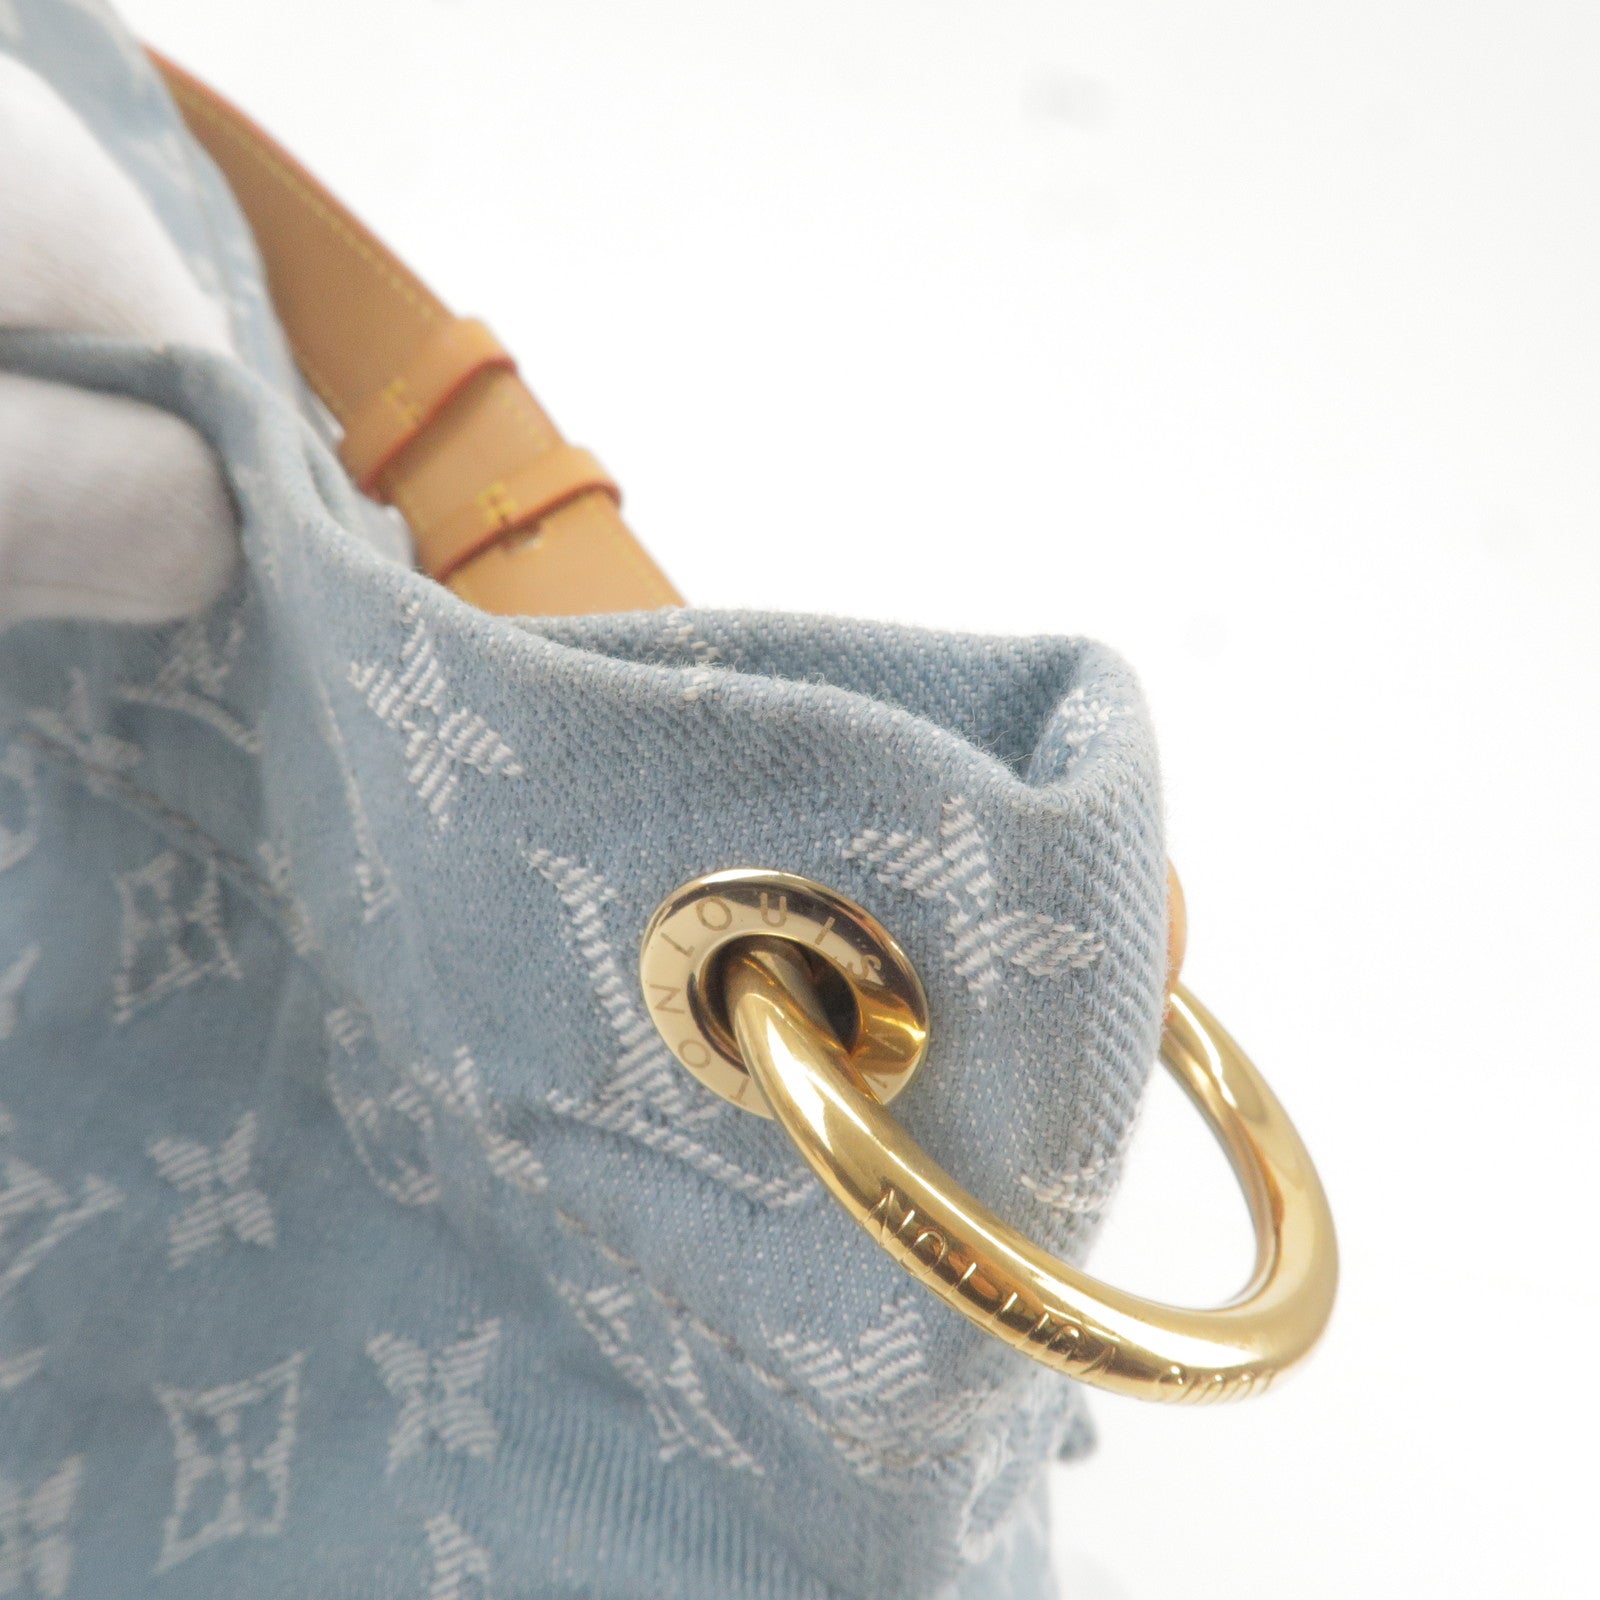 Louis-Vuitton-Monogram-Denim-Daily-GM-Shoulder-Bag-M40492 – dct